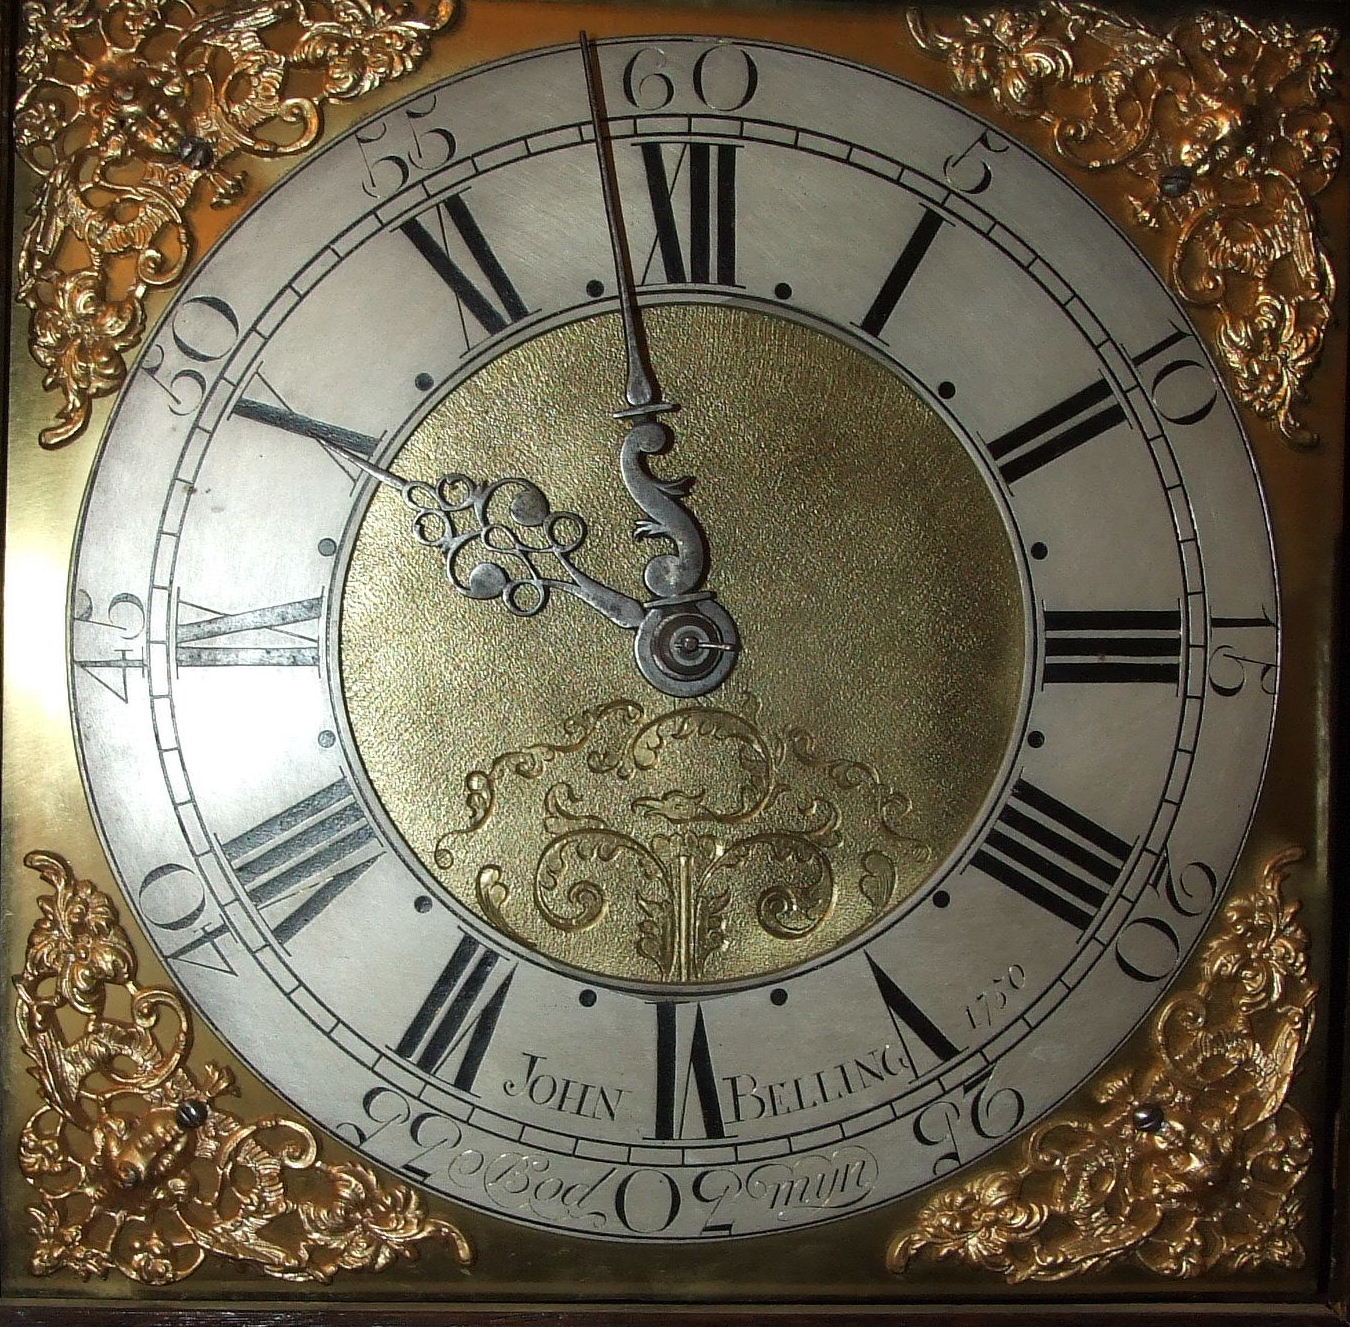 John Belling, Bodmyn, a late-18th century oak long case clock.